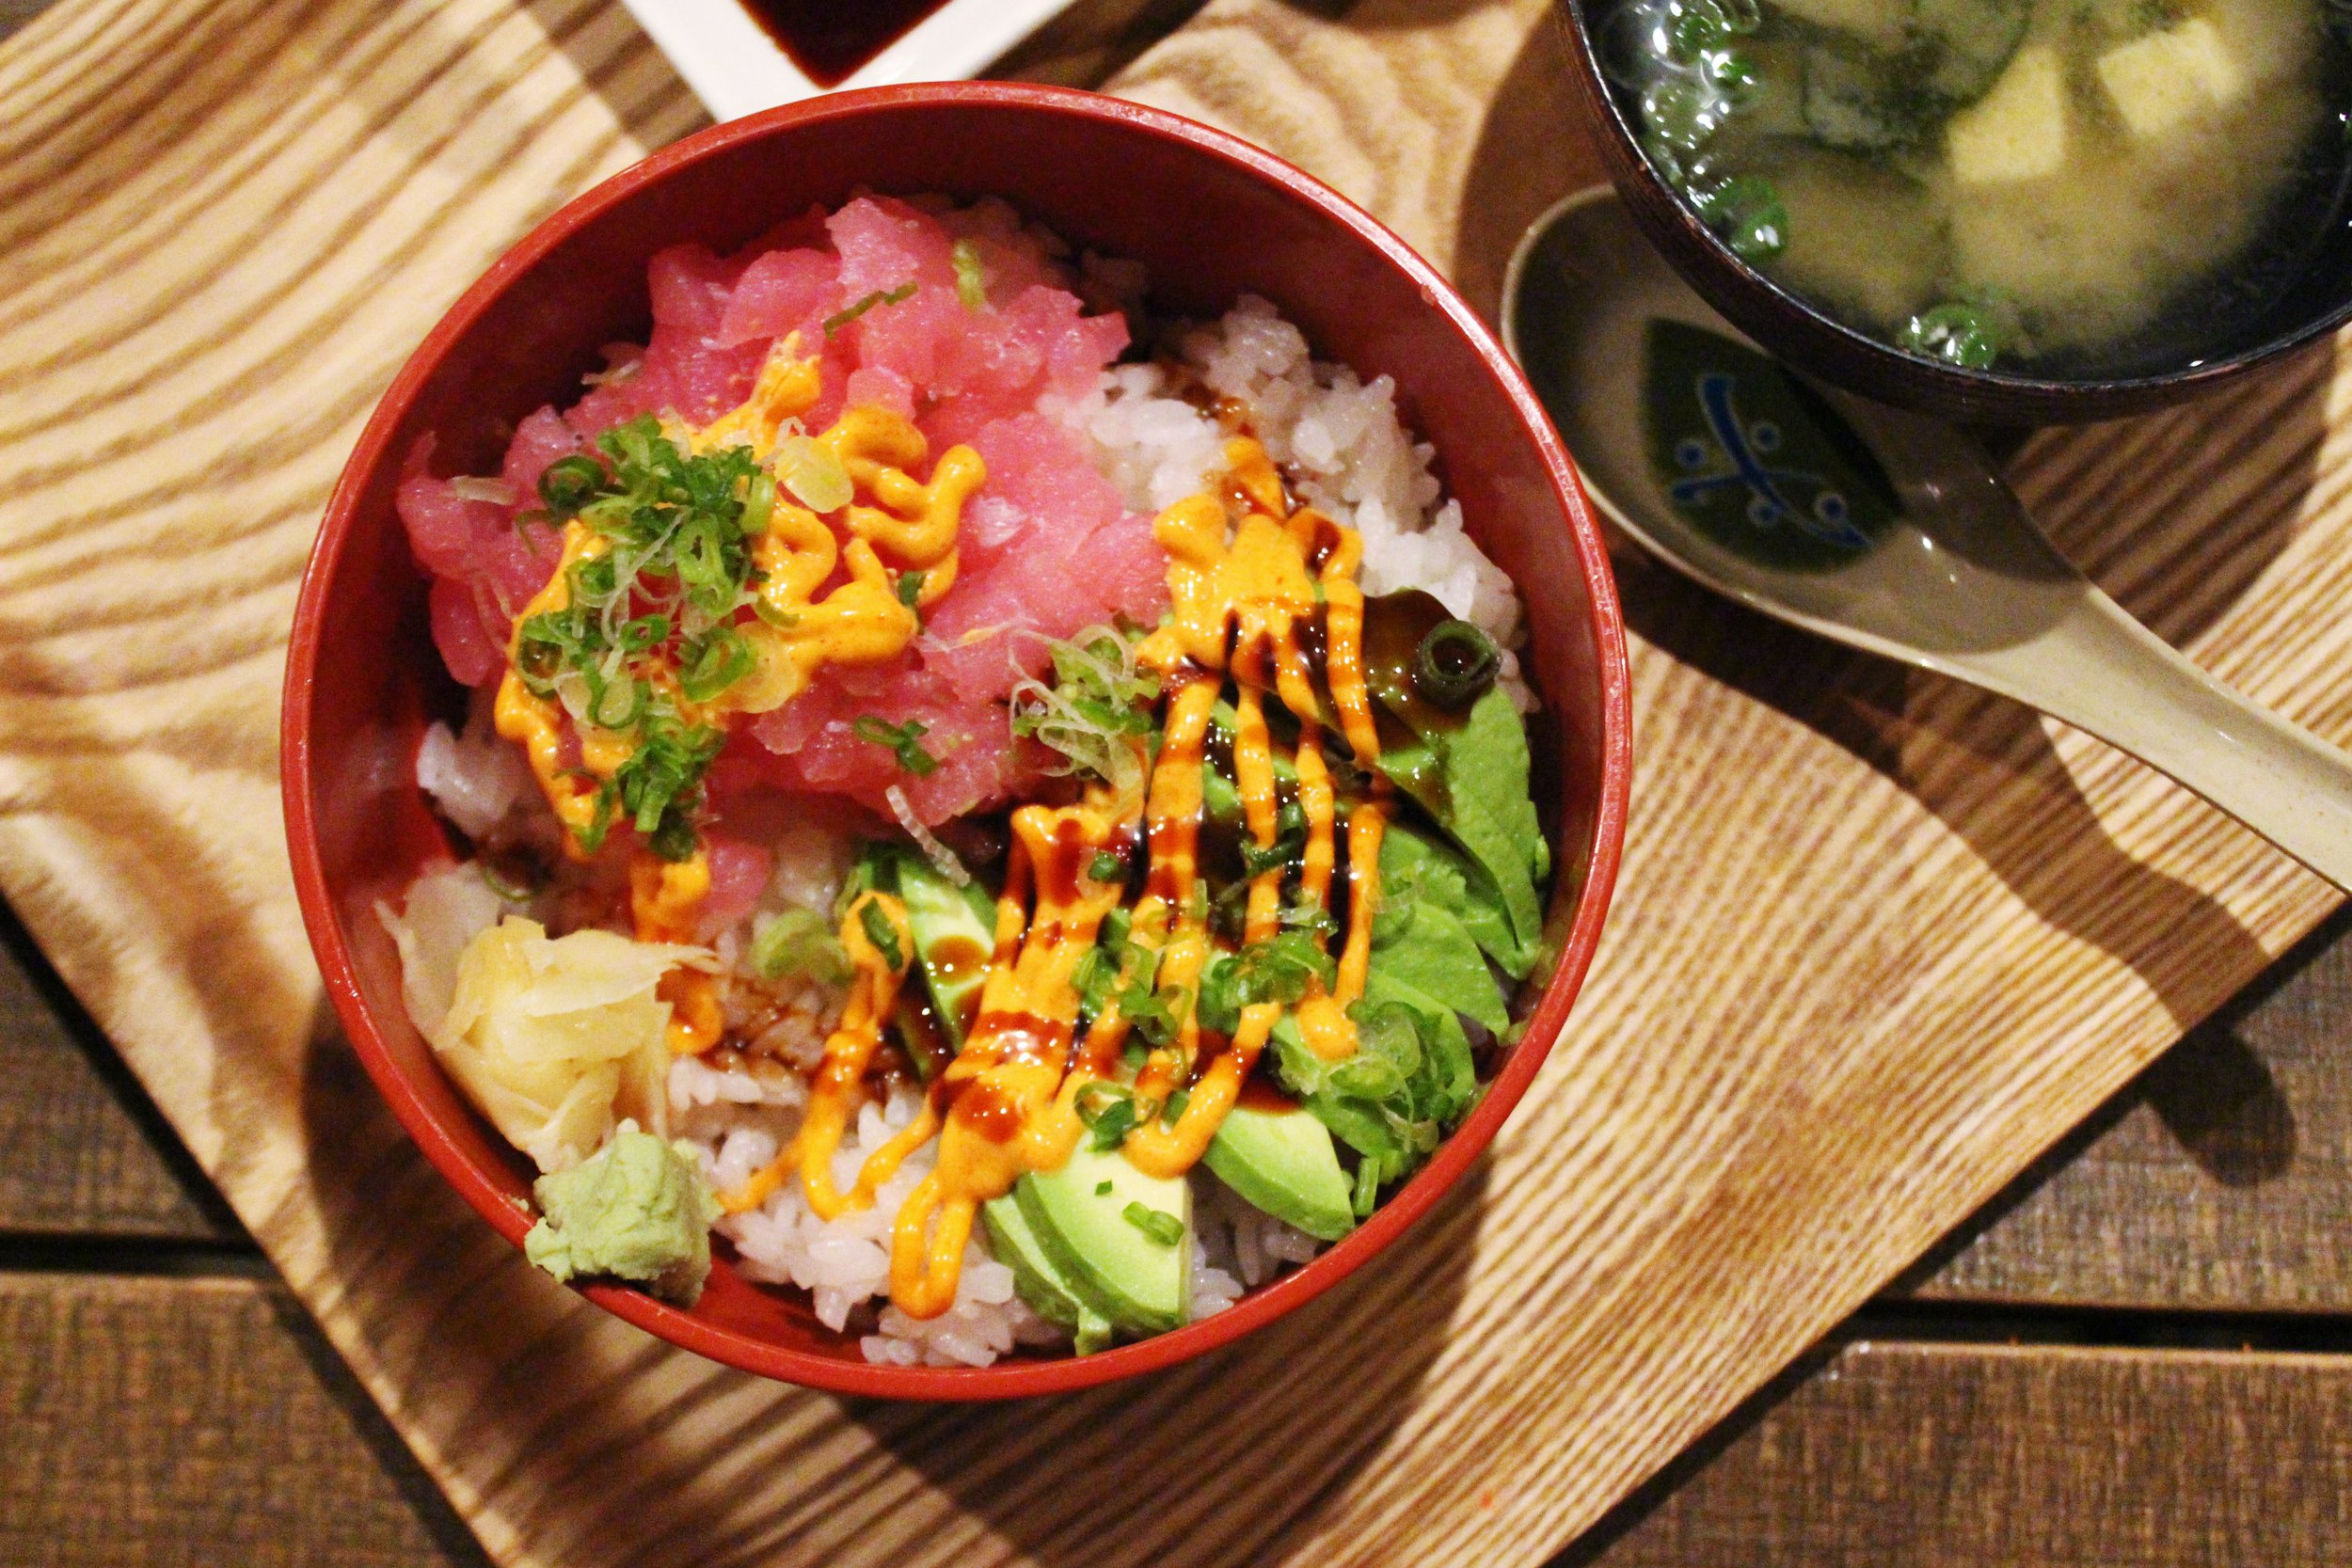 Tuna Tar Tar Don: Chopped Tuna Sashimi with Avocado and Spicy Mayo over rice